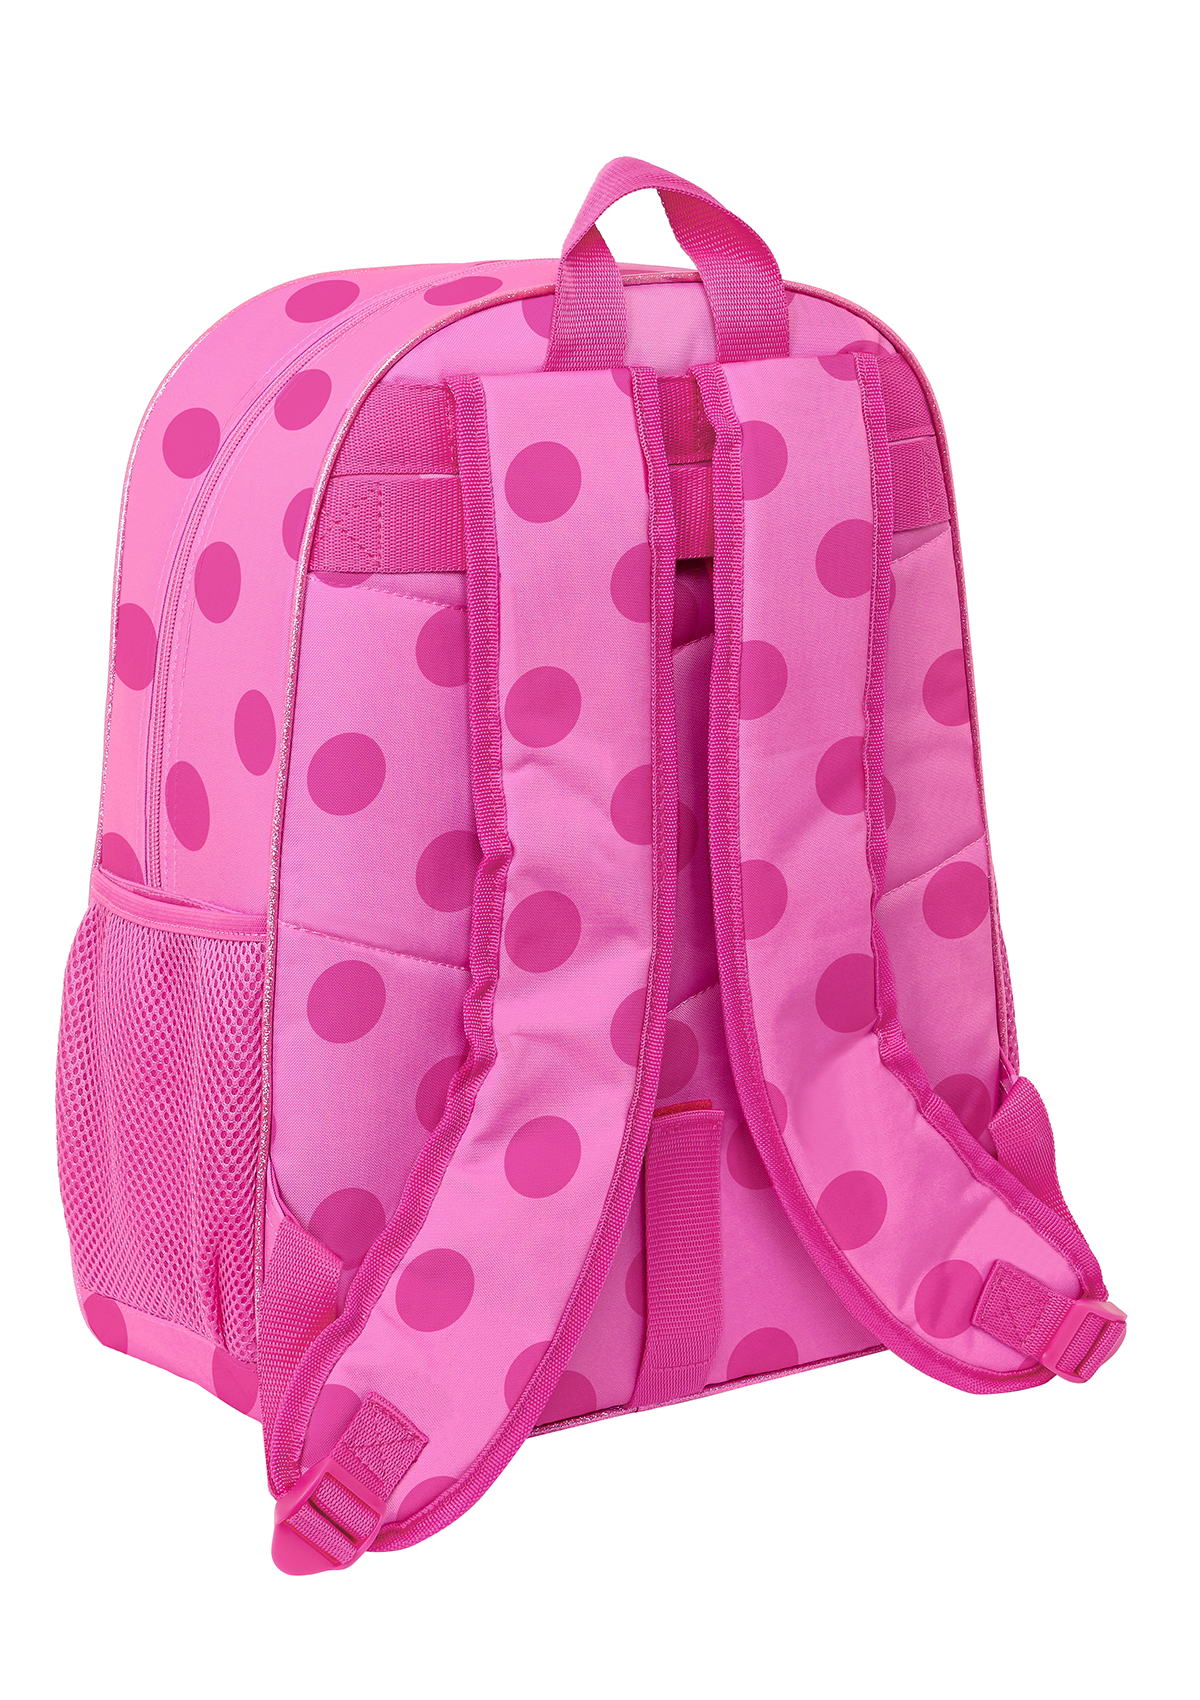 LadyBug Large Backpack